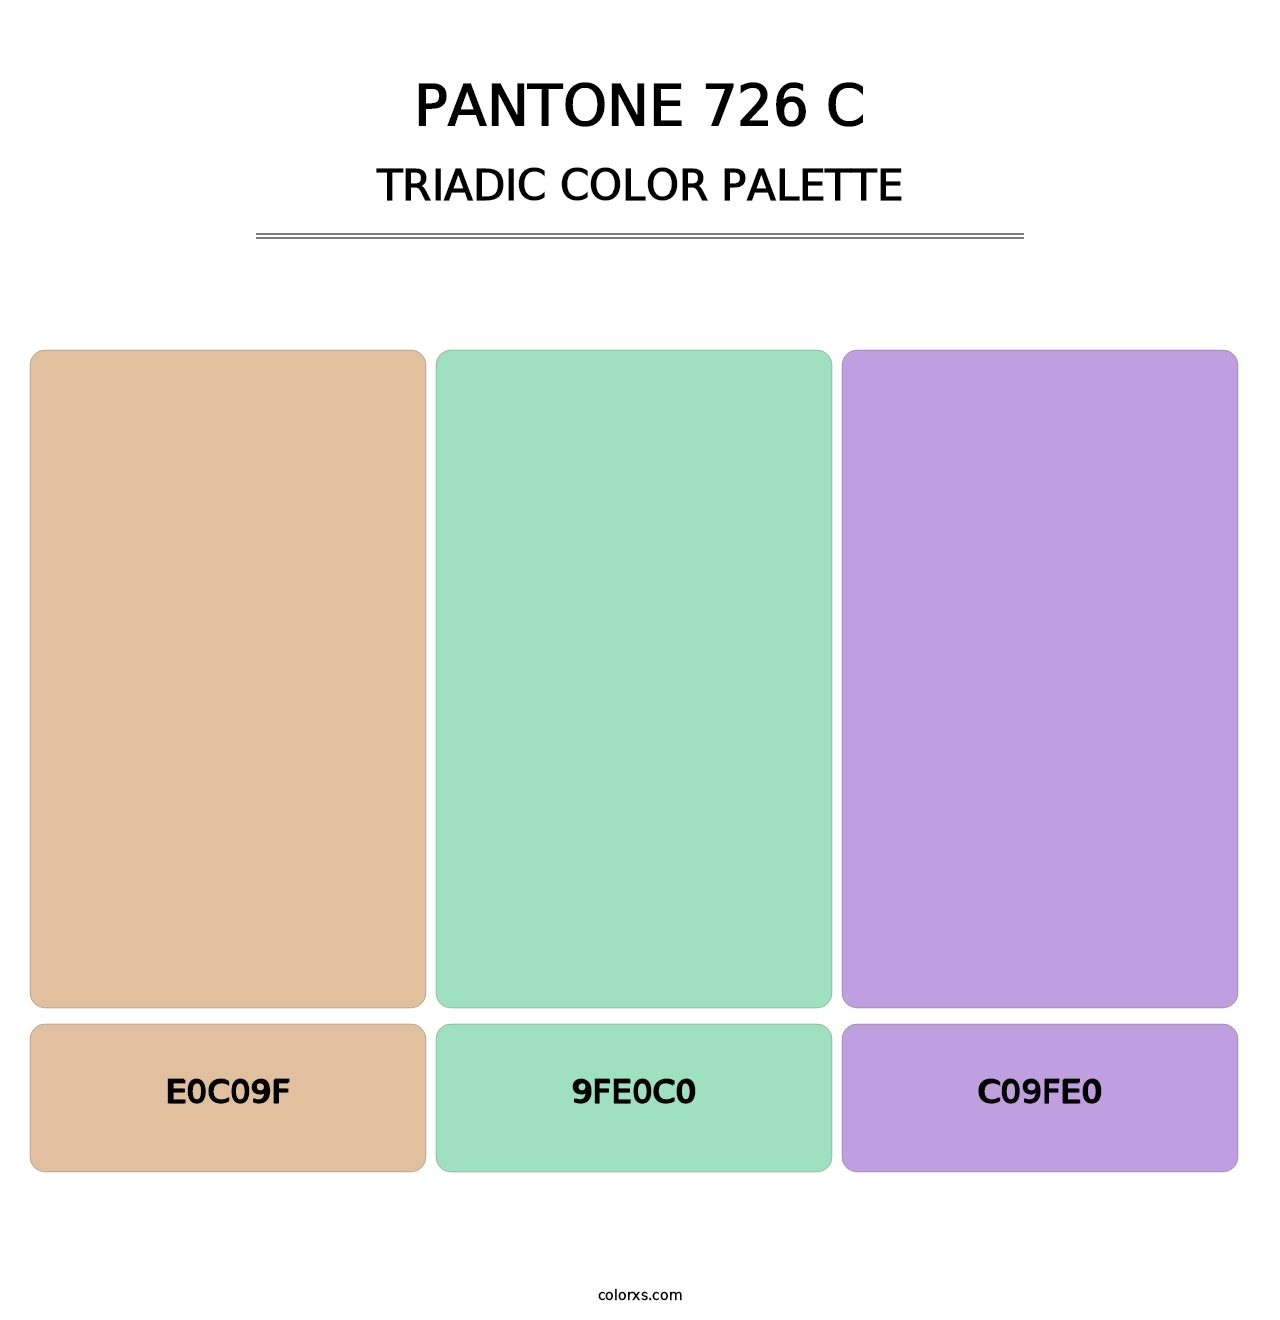 PANTONE 726 C - Triadic Color Palette